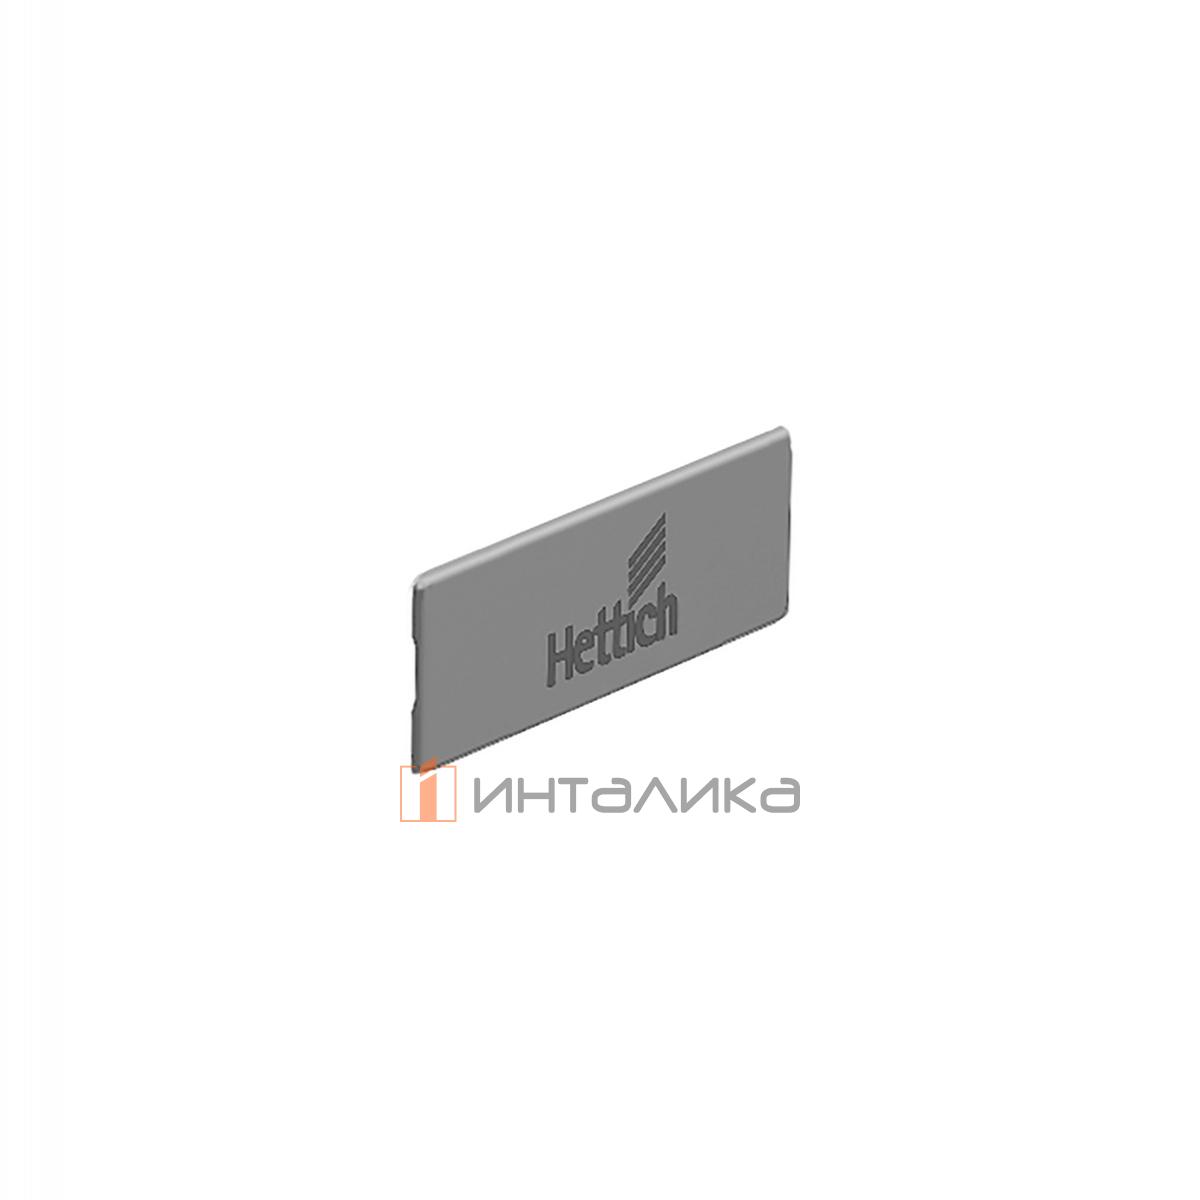 Заглушка HETTICH InnoTech Atira с лого Hettich, пластик, цвет серебристый, (V300)